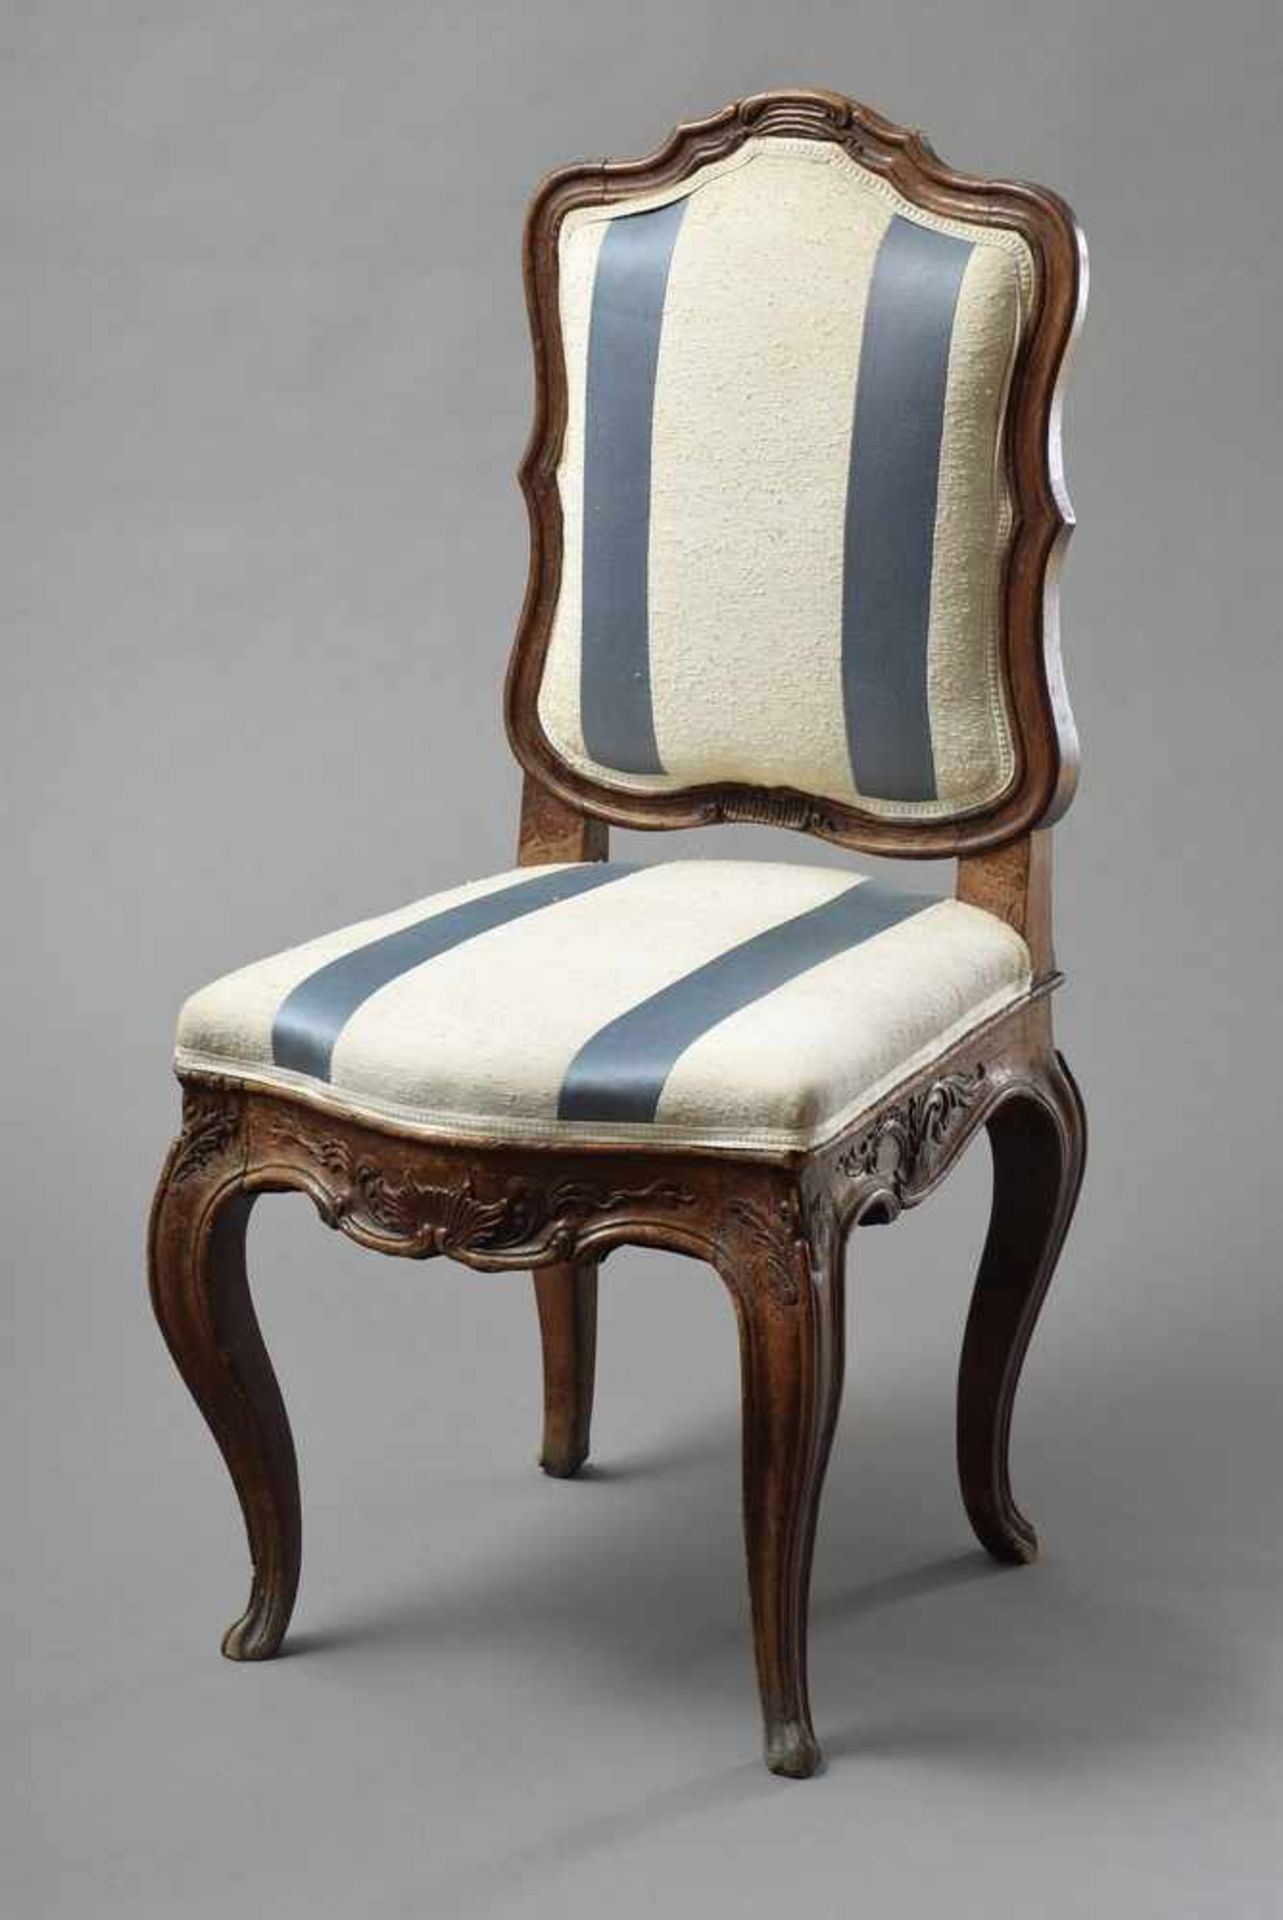 Barocker Stuhl mit geschweiften Beinen sowie Muschel- und Blätterschnitzwerk, blau-weiß